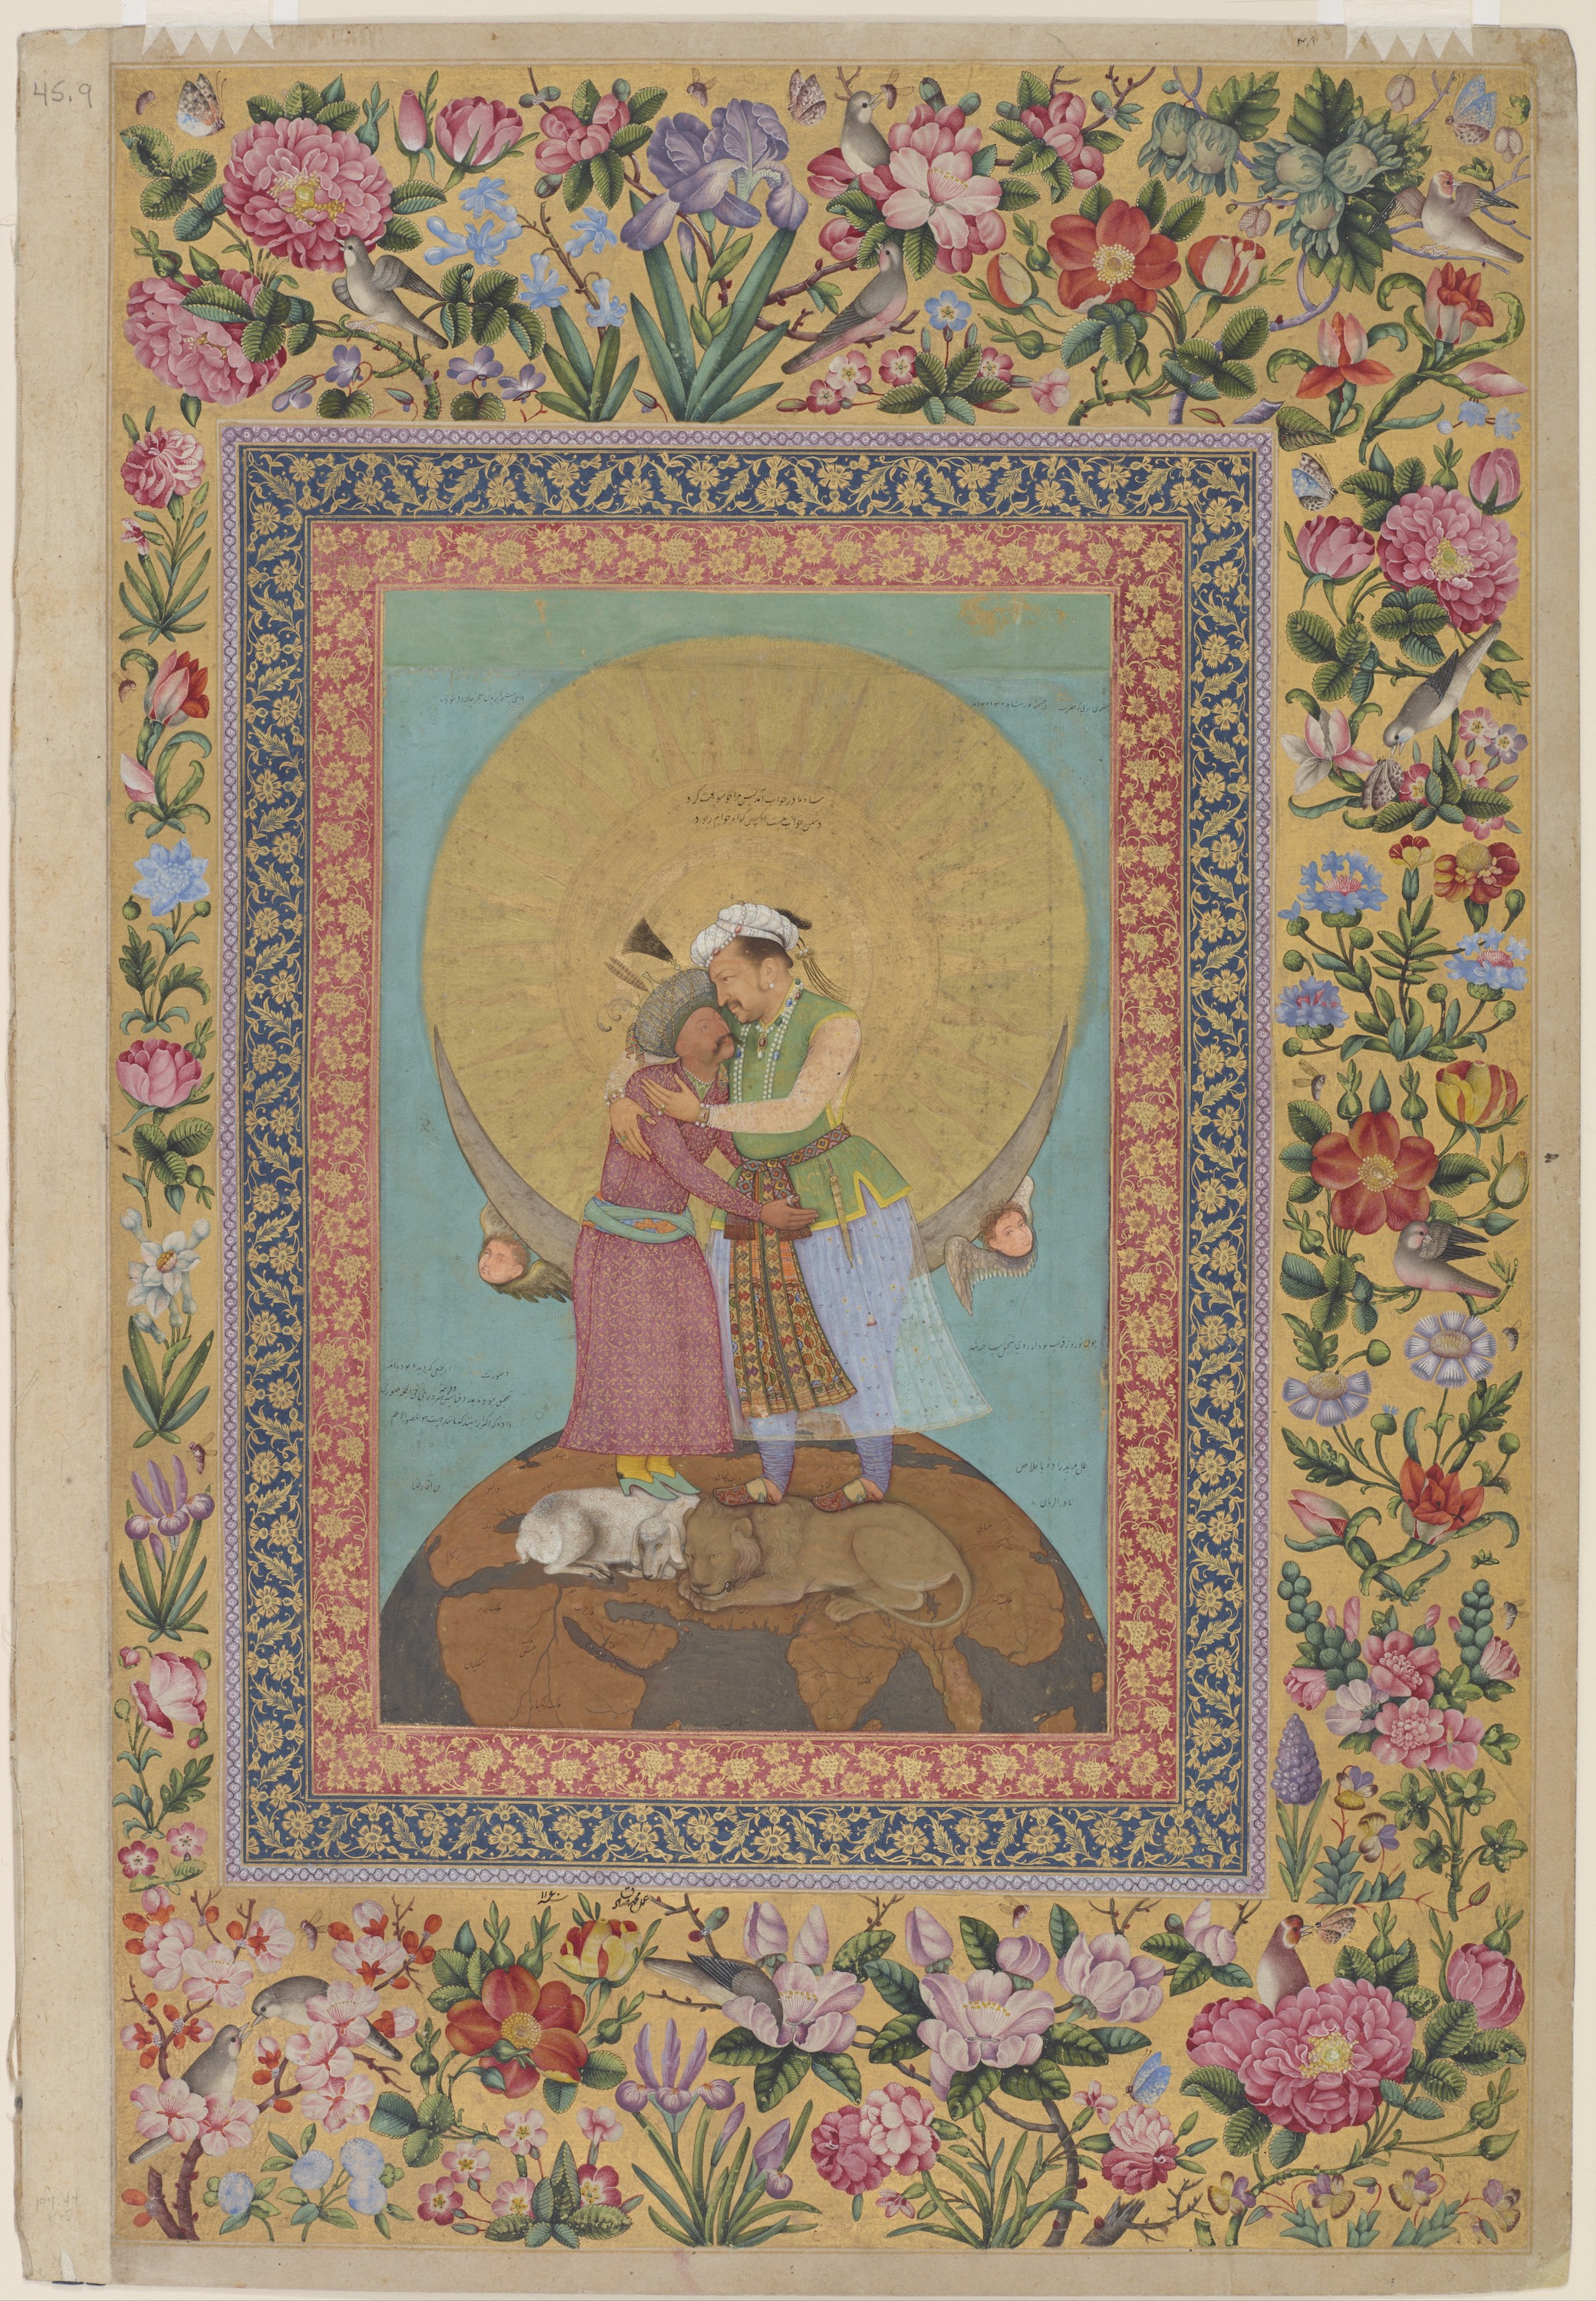 Αλληγορική αναπαράσταση του Αυτοκράτορα Τζαχανγκίρ και του Σαχ Αμπάς της Περσίας by Αμπου αλ-Χασάν - κατά προσέγγιση 1618; διακοσμητικό πλαίσιο 1747–48 - 9 3/8 x 6 1/16 in 